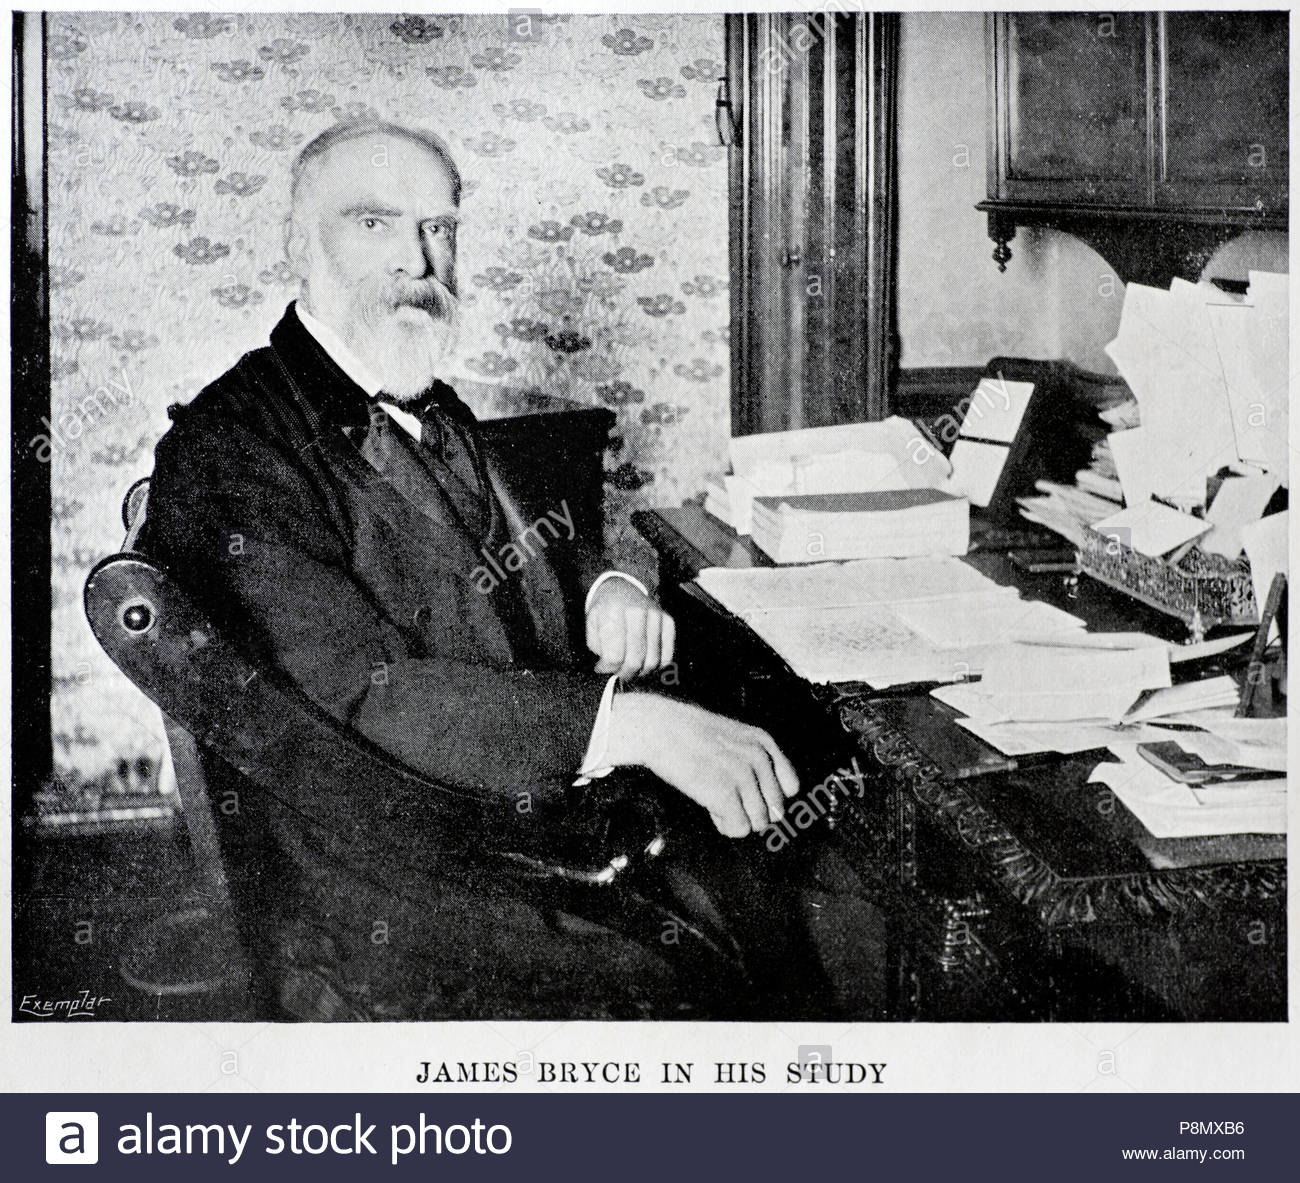 James Bryce ritratto, 1838 - 1922 era un accademico britannico, giurista, storico e uomo politico liberale, immagine dal c1900 Foto Stock